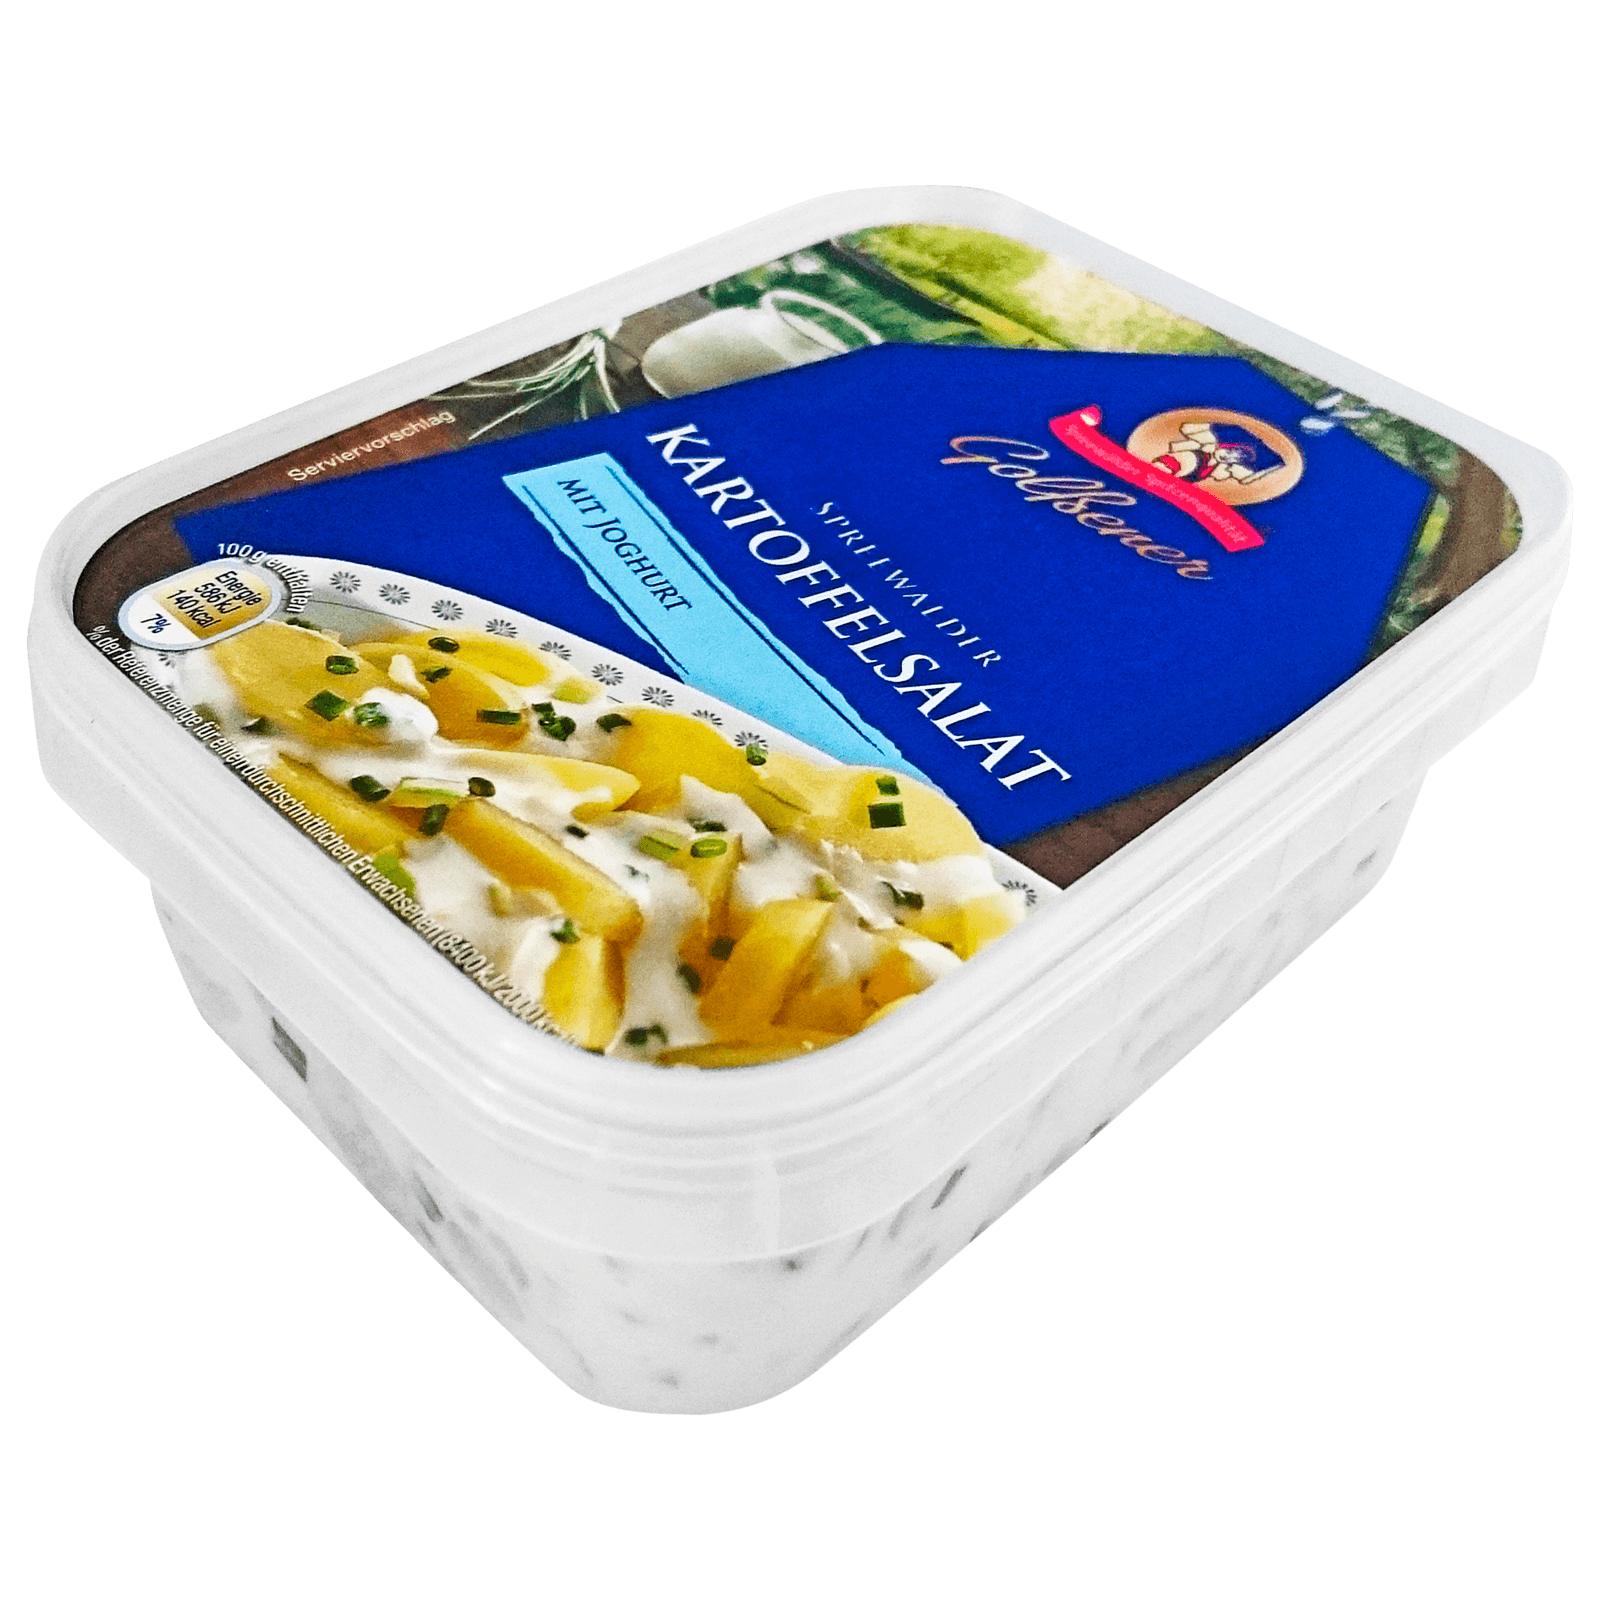 Golßener Spreewälder Kartoffelsalat mit Joghurt 200g bei REWE online ...